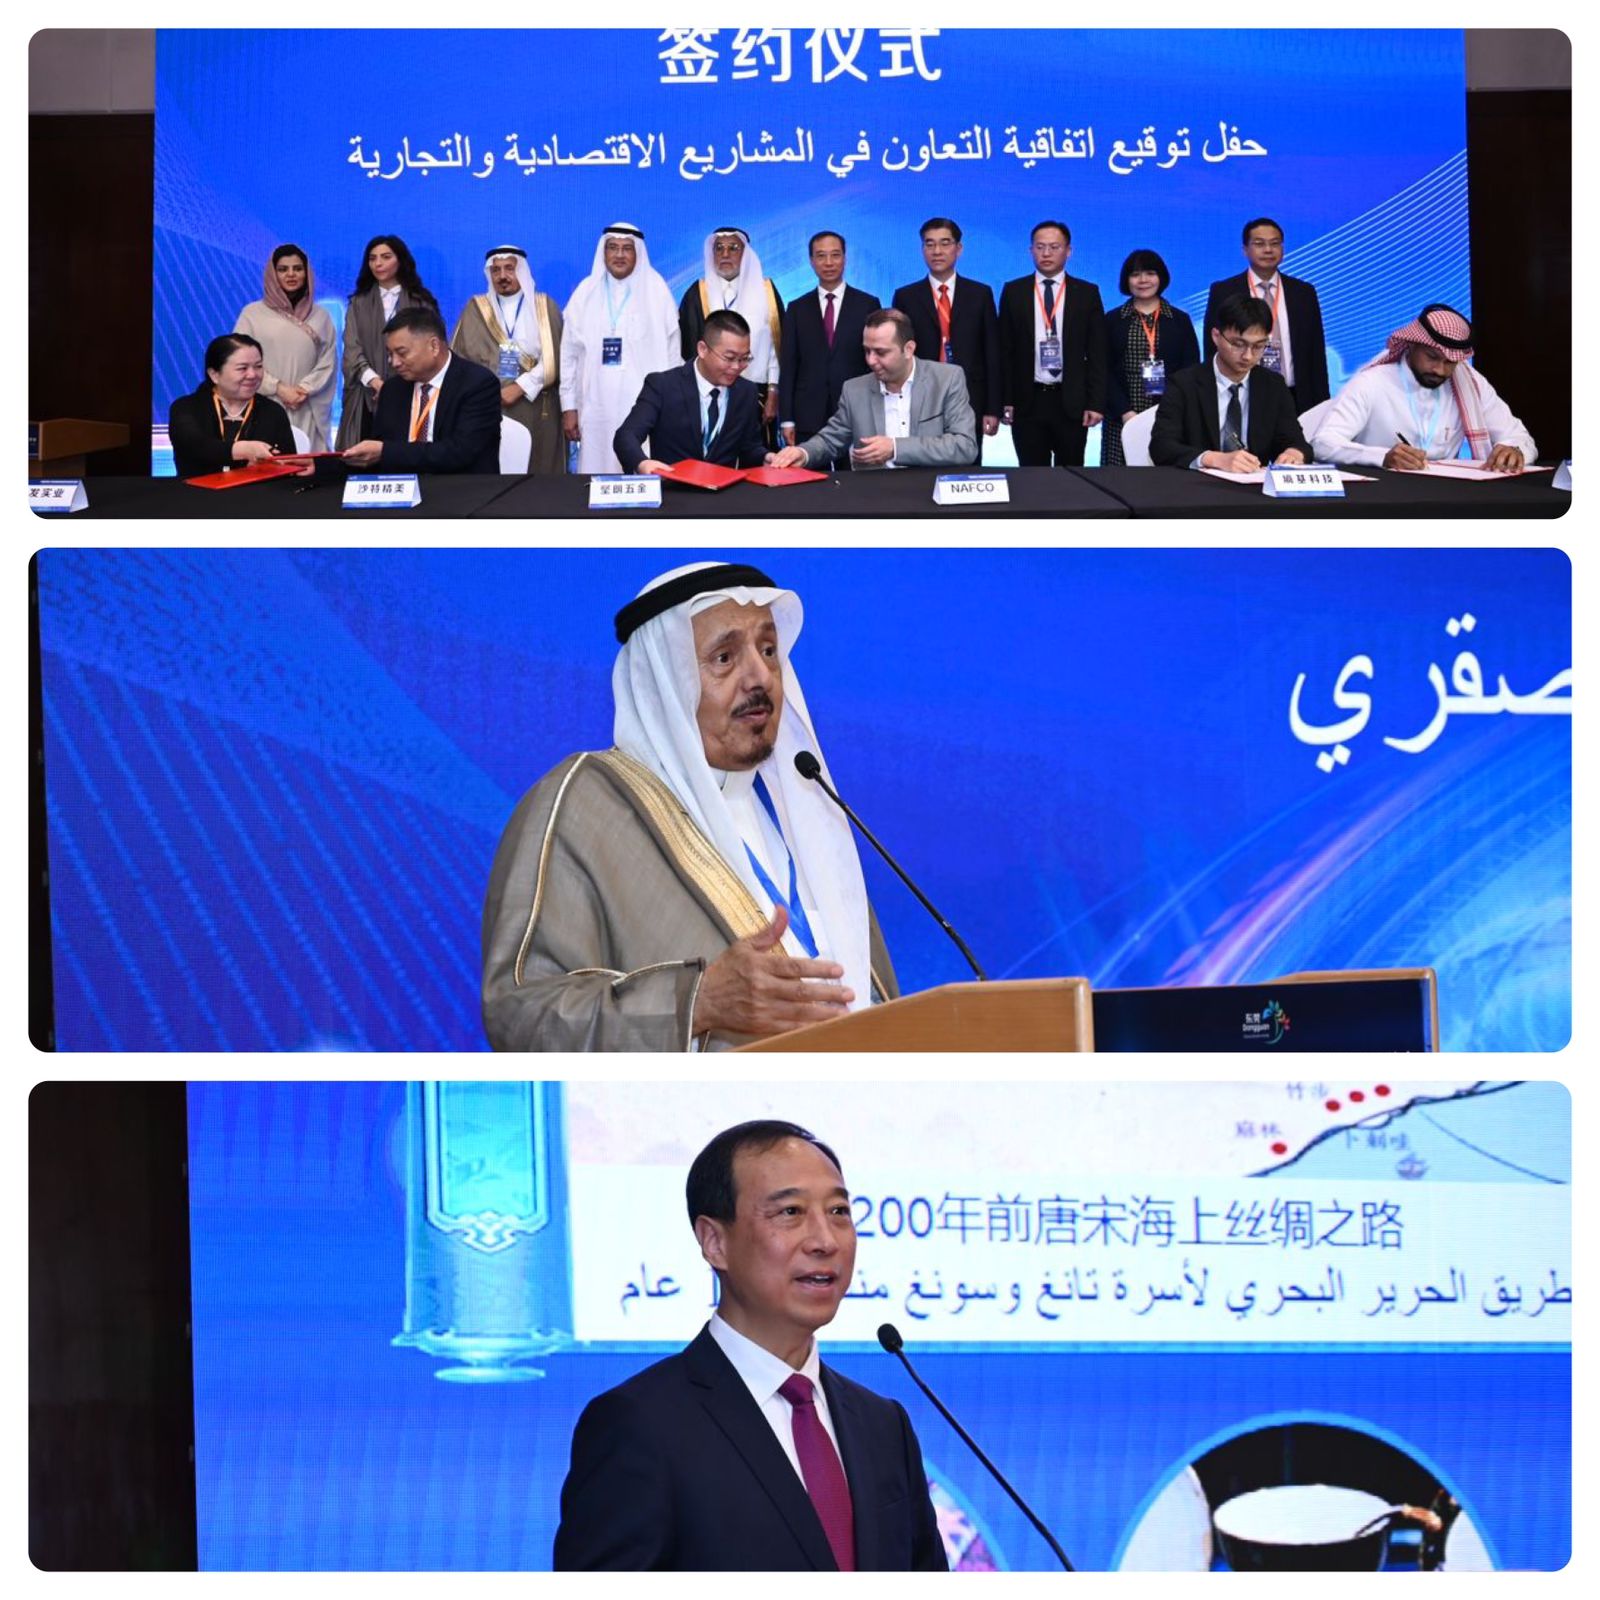 انطلق المؤتمر السعودي الصيني في الرياض